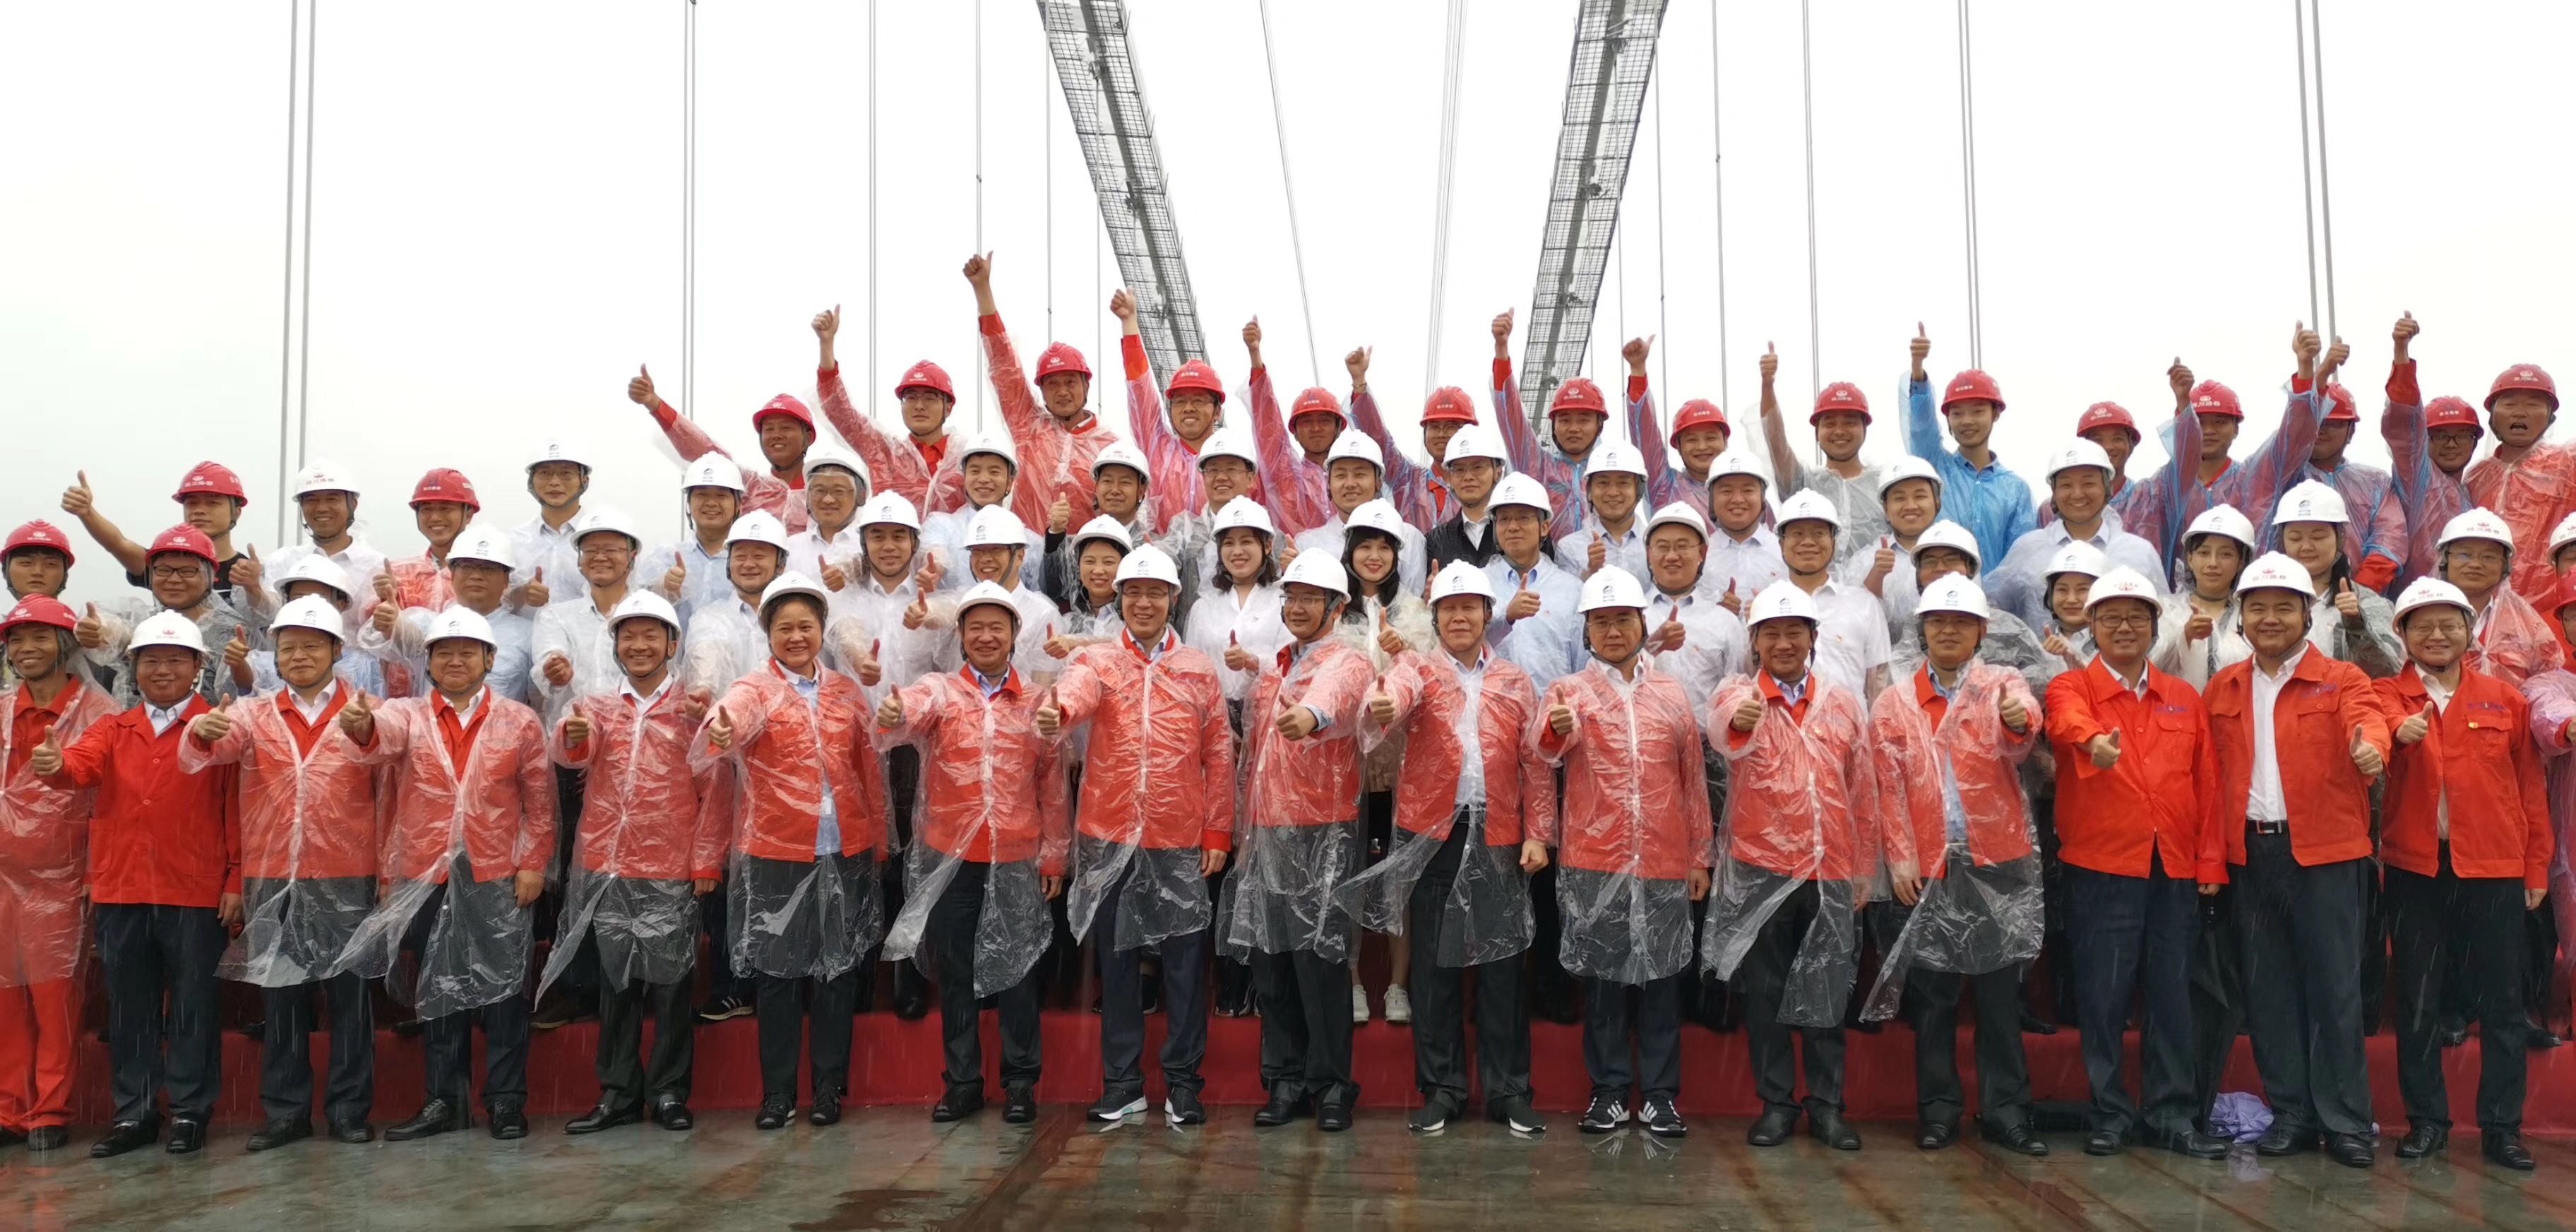 继承发扬红色传统工匠精神 高效建成超级工程民生工程 ——省铁投集团在威尼斯wns·8885566赤水河大桥项目开展特色主题教育活动